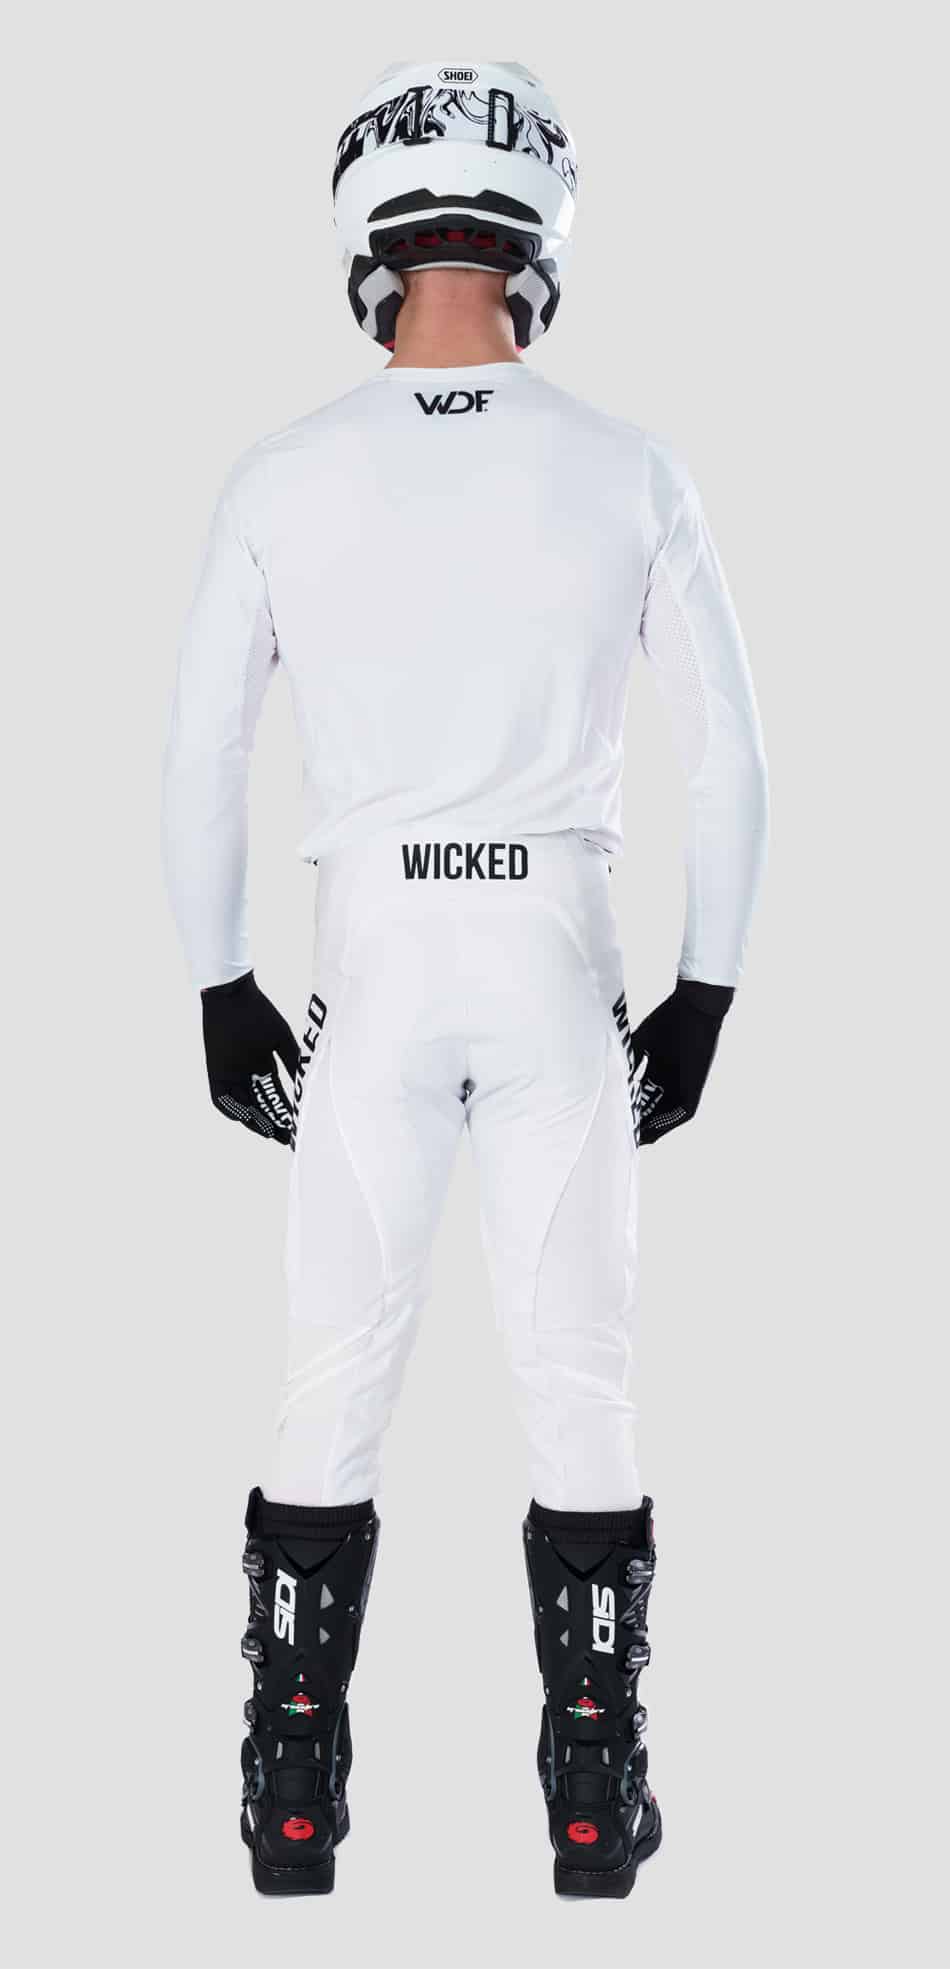 Bright white mx gear